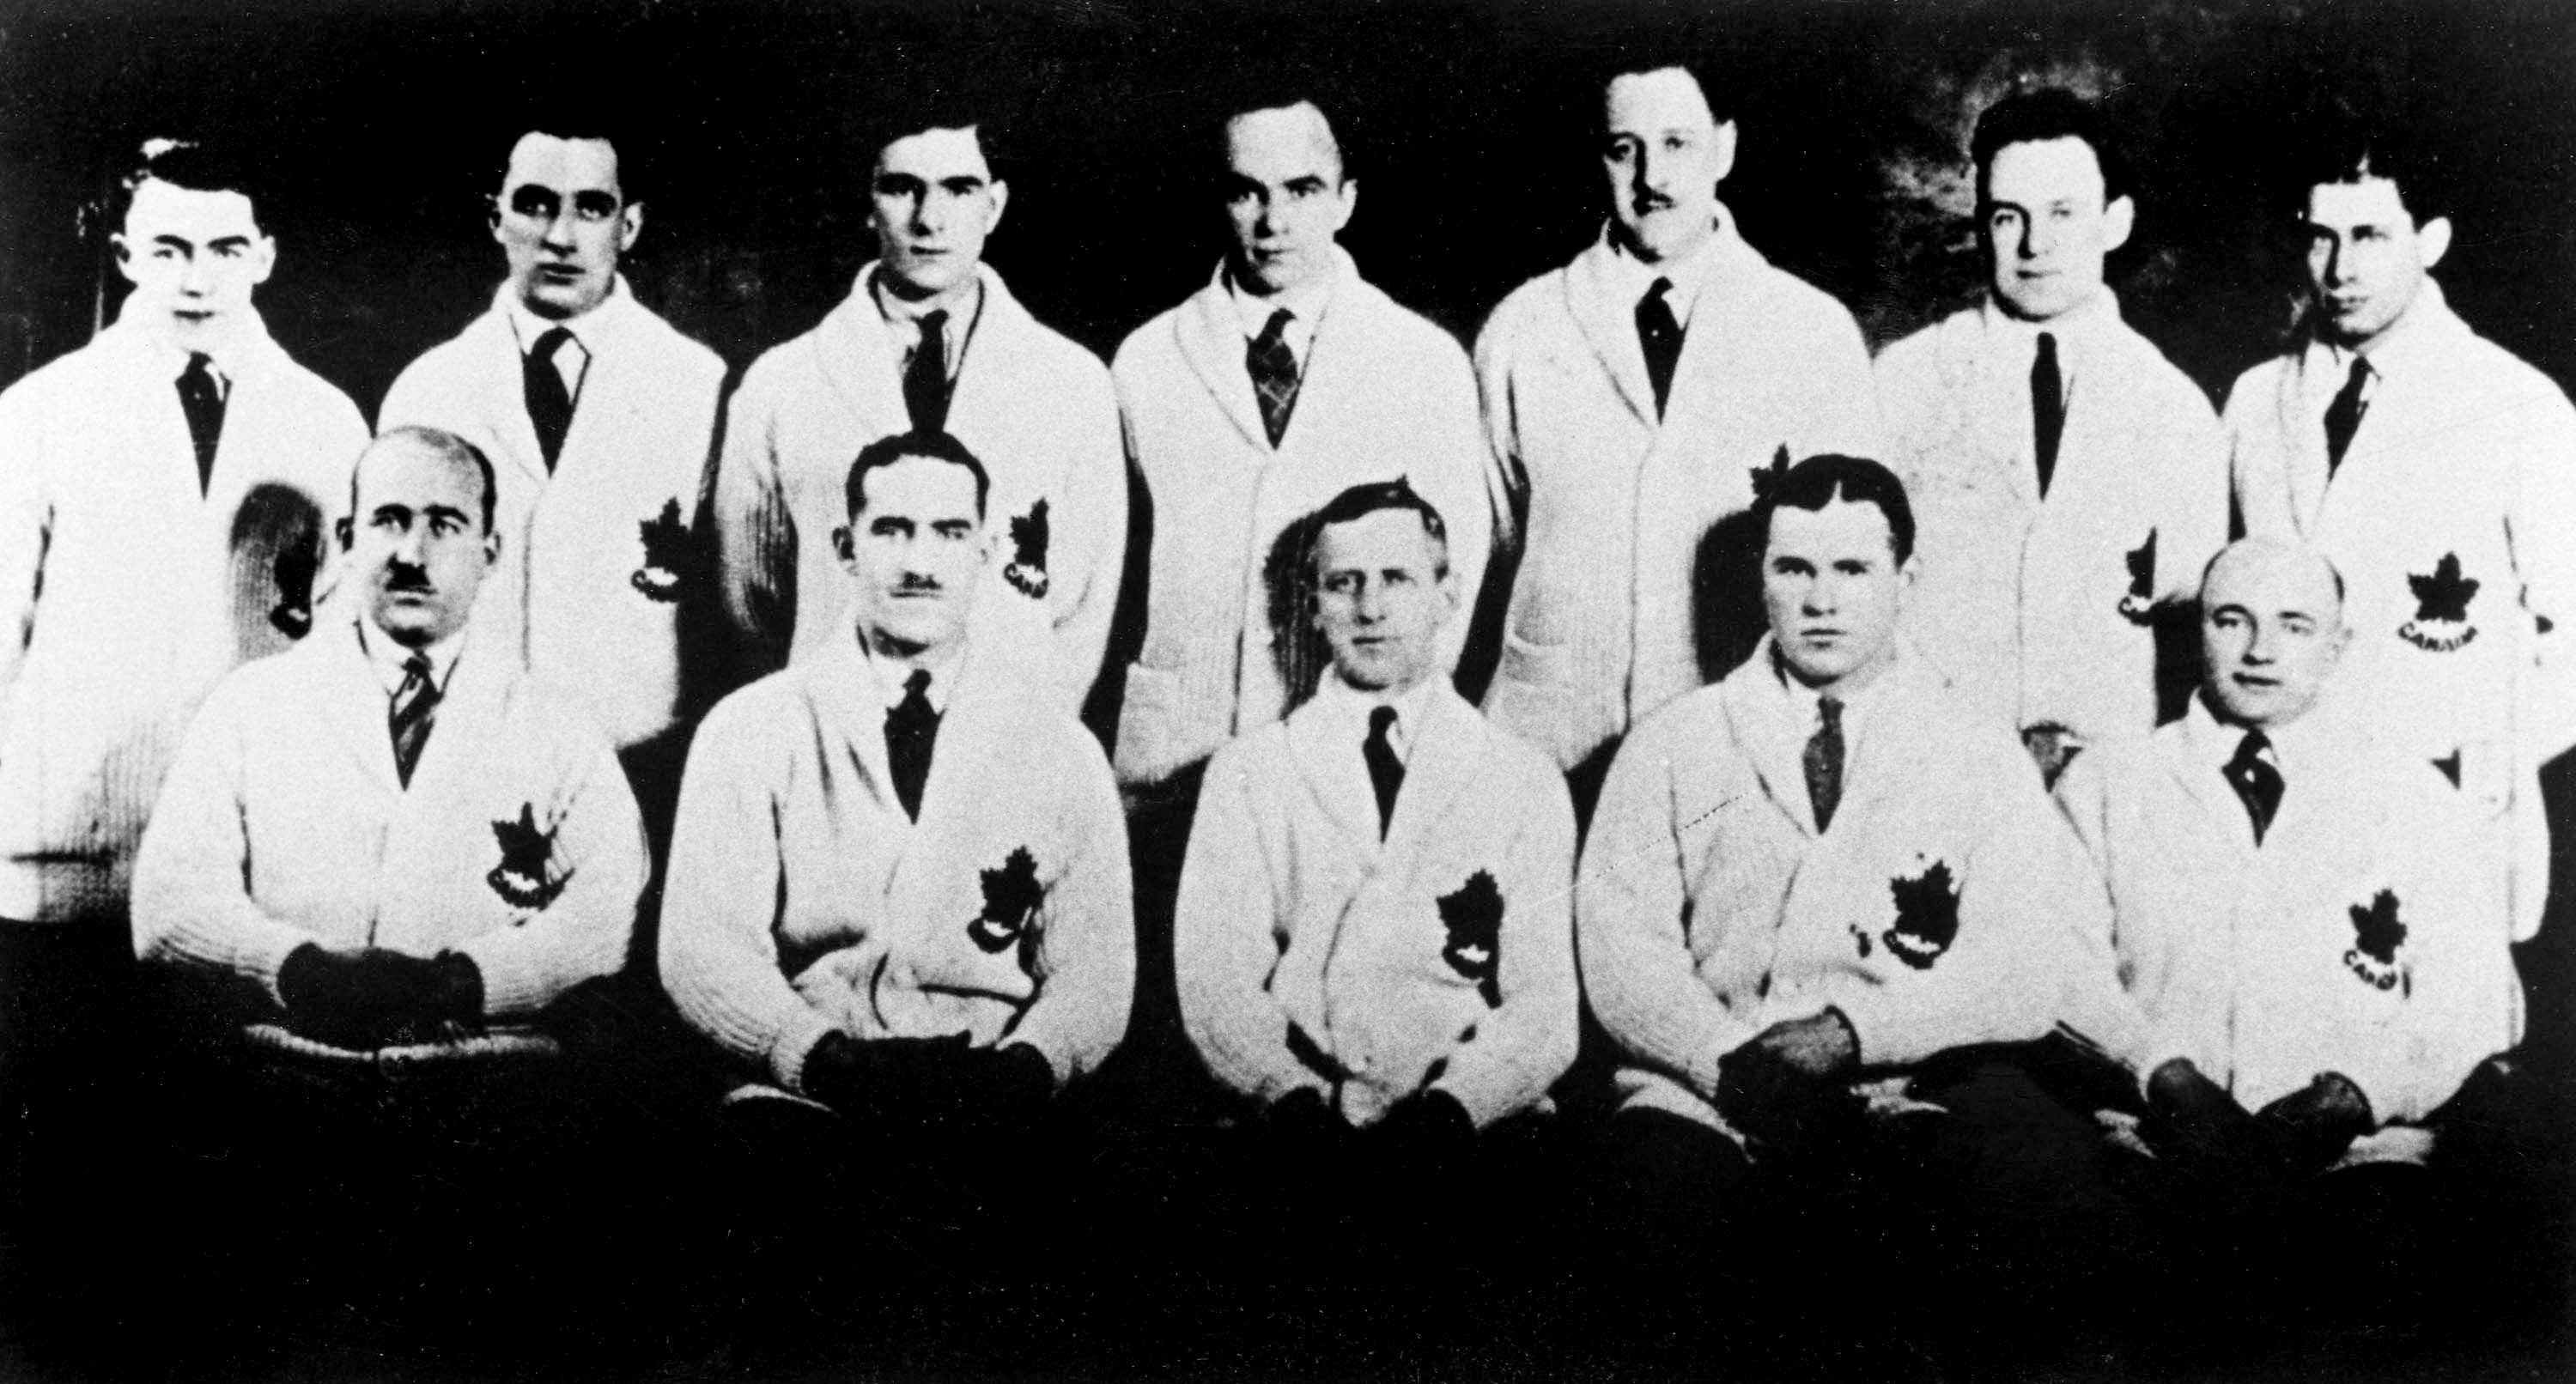 L'équipe canadienne de hockey sur glace, les Granites de Toronto, lors des Jeux olympiques d'hiver de 1924 à de Chamonix. (Photo : PC/COC)